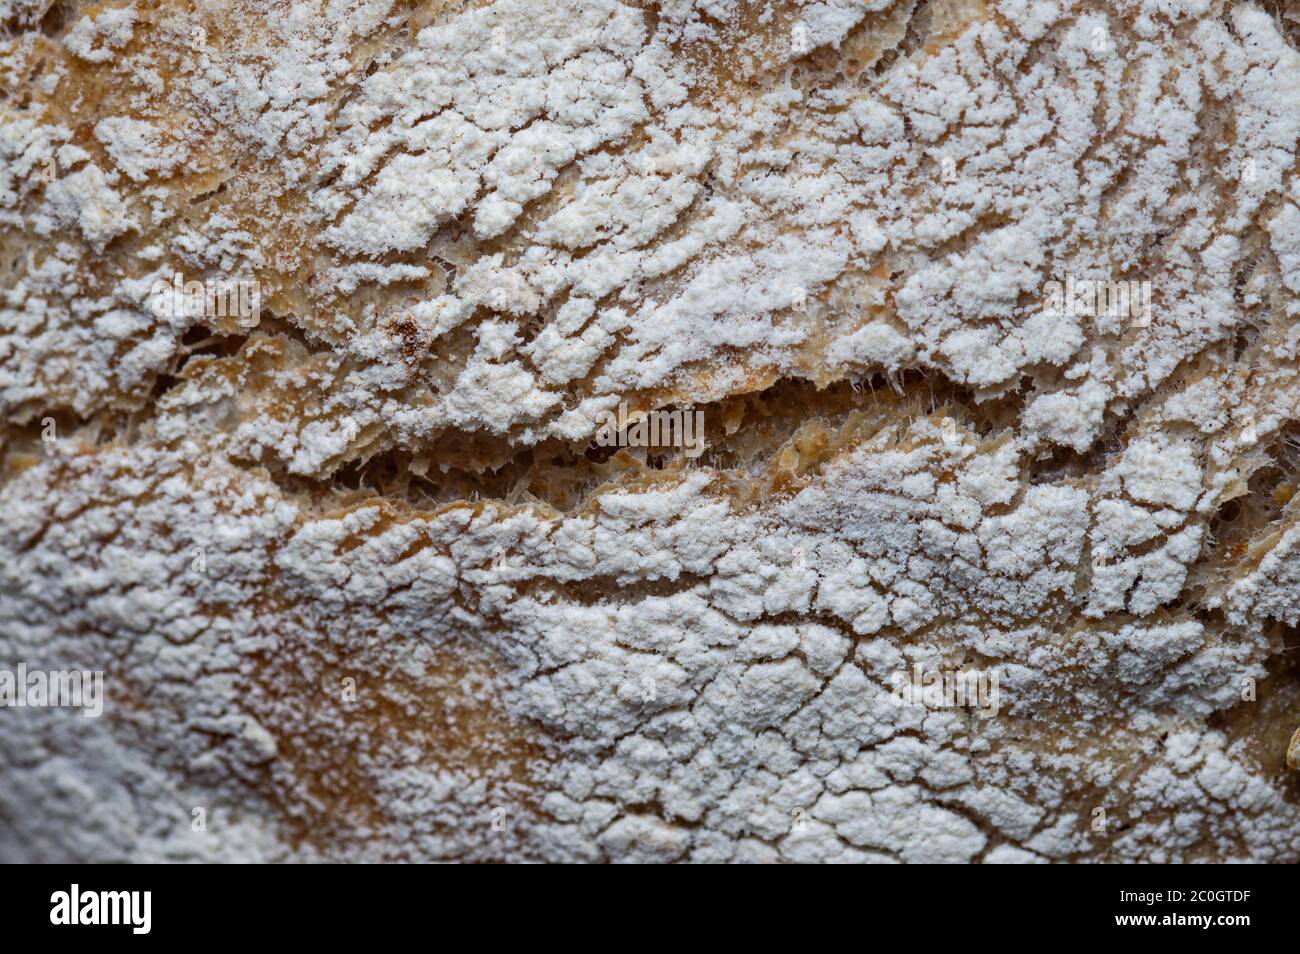 Frisch gebackenes hausgemachtes Brot in Korbkorb auf Holztisch Stockfoto